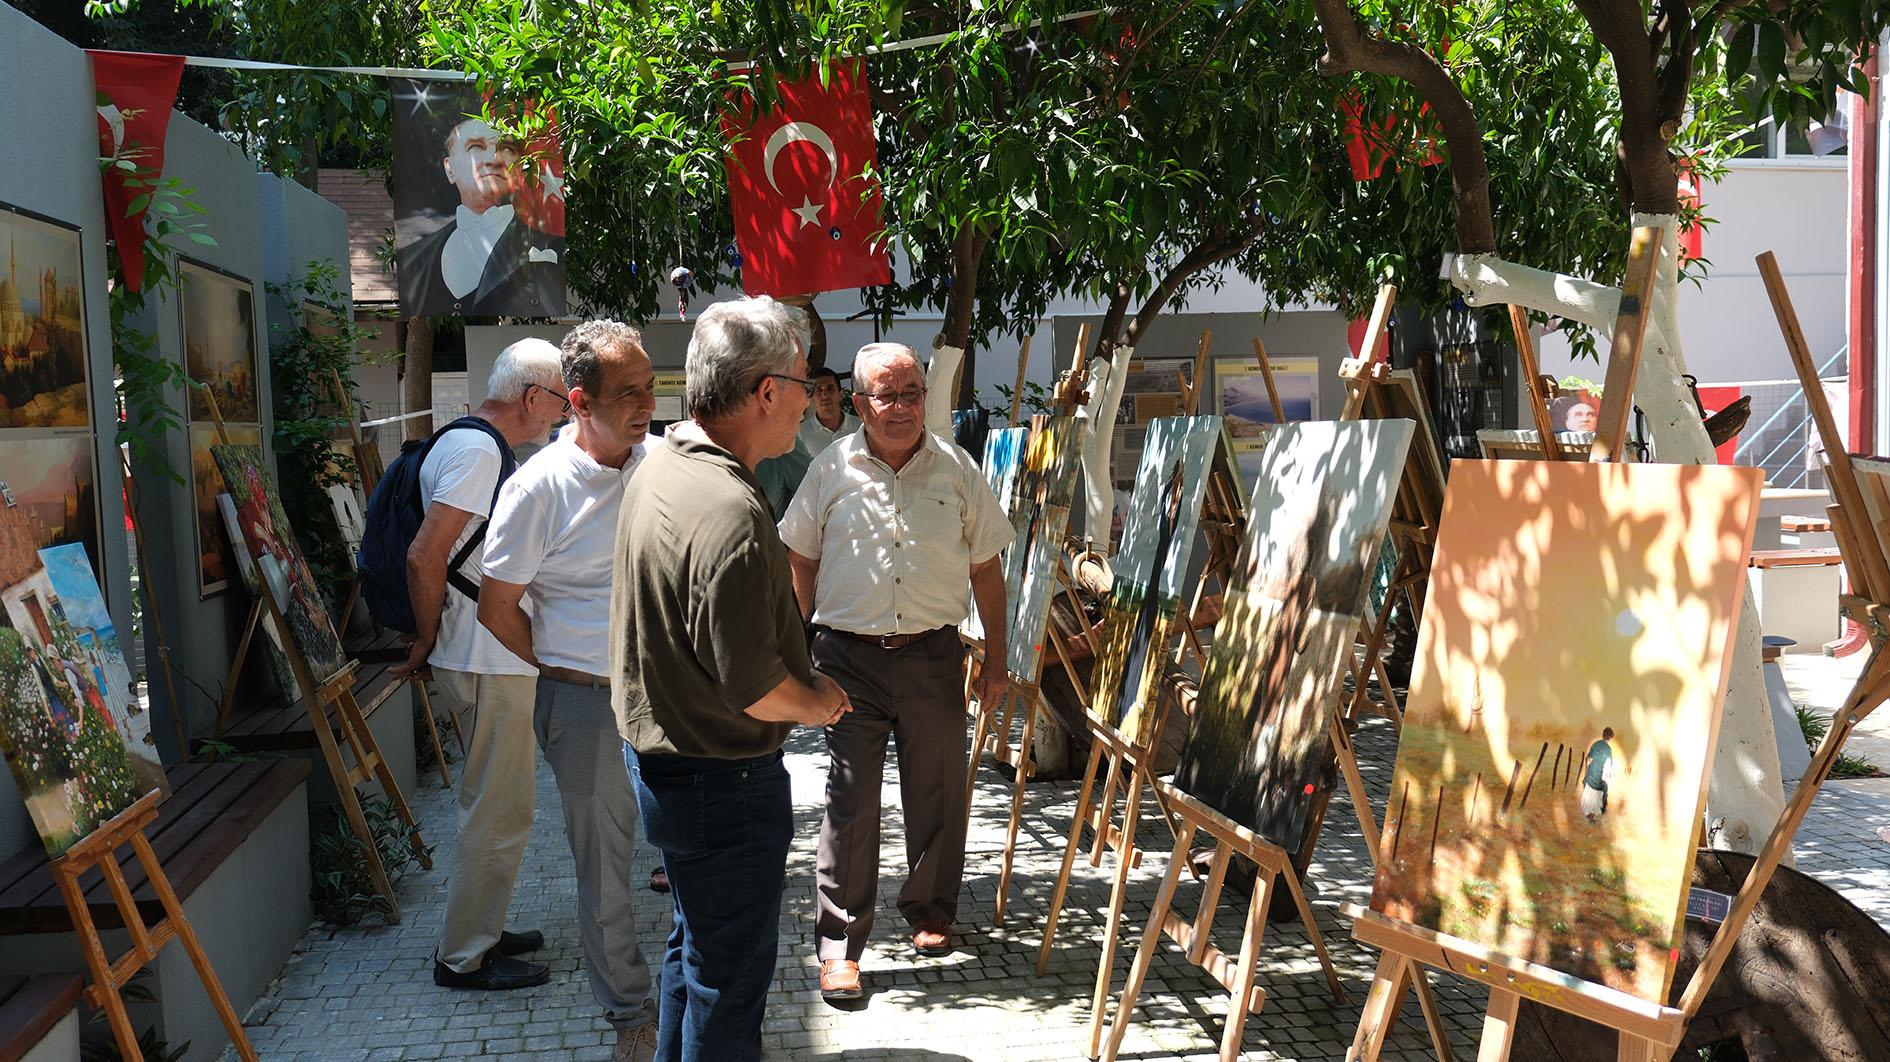 Kemer Belediyesi Kültür Evi'nde yağlı boya resim sergisi büyük ilgi gördü